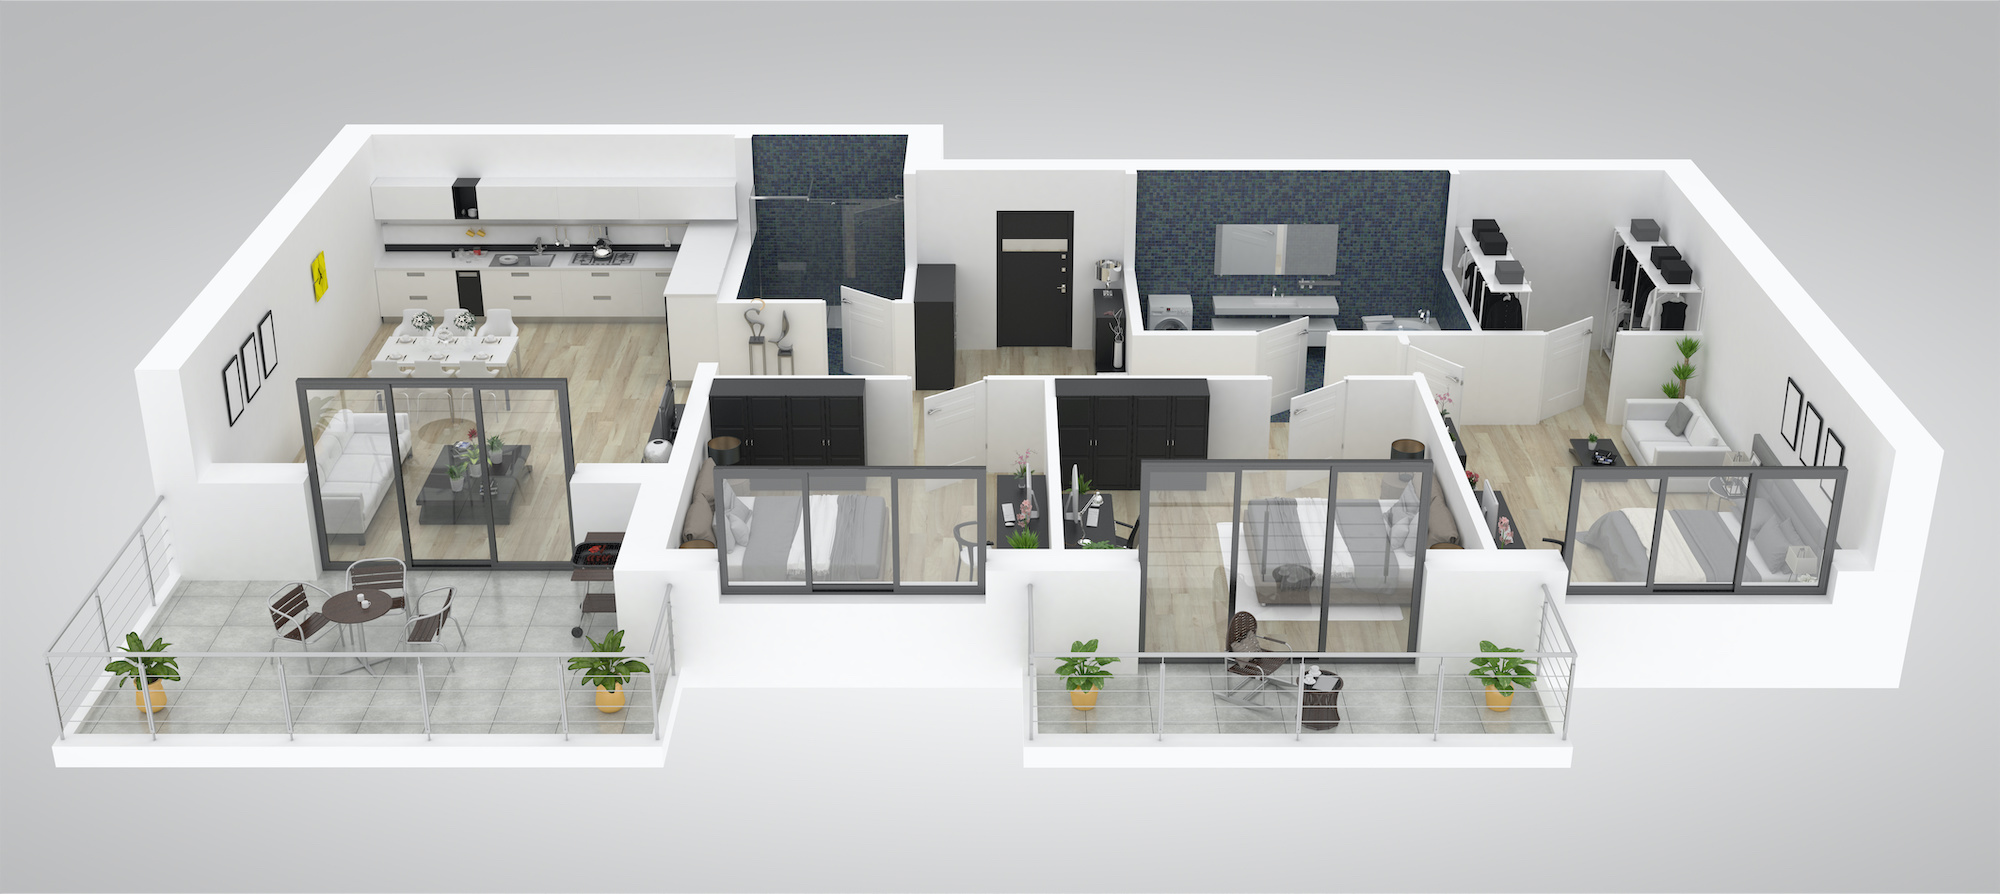 Loft Apartment Interior Design Ideas